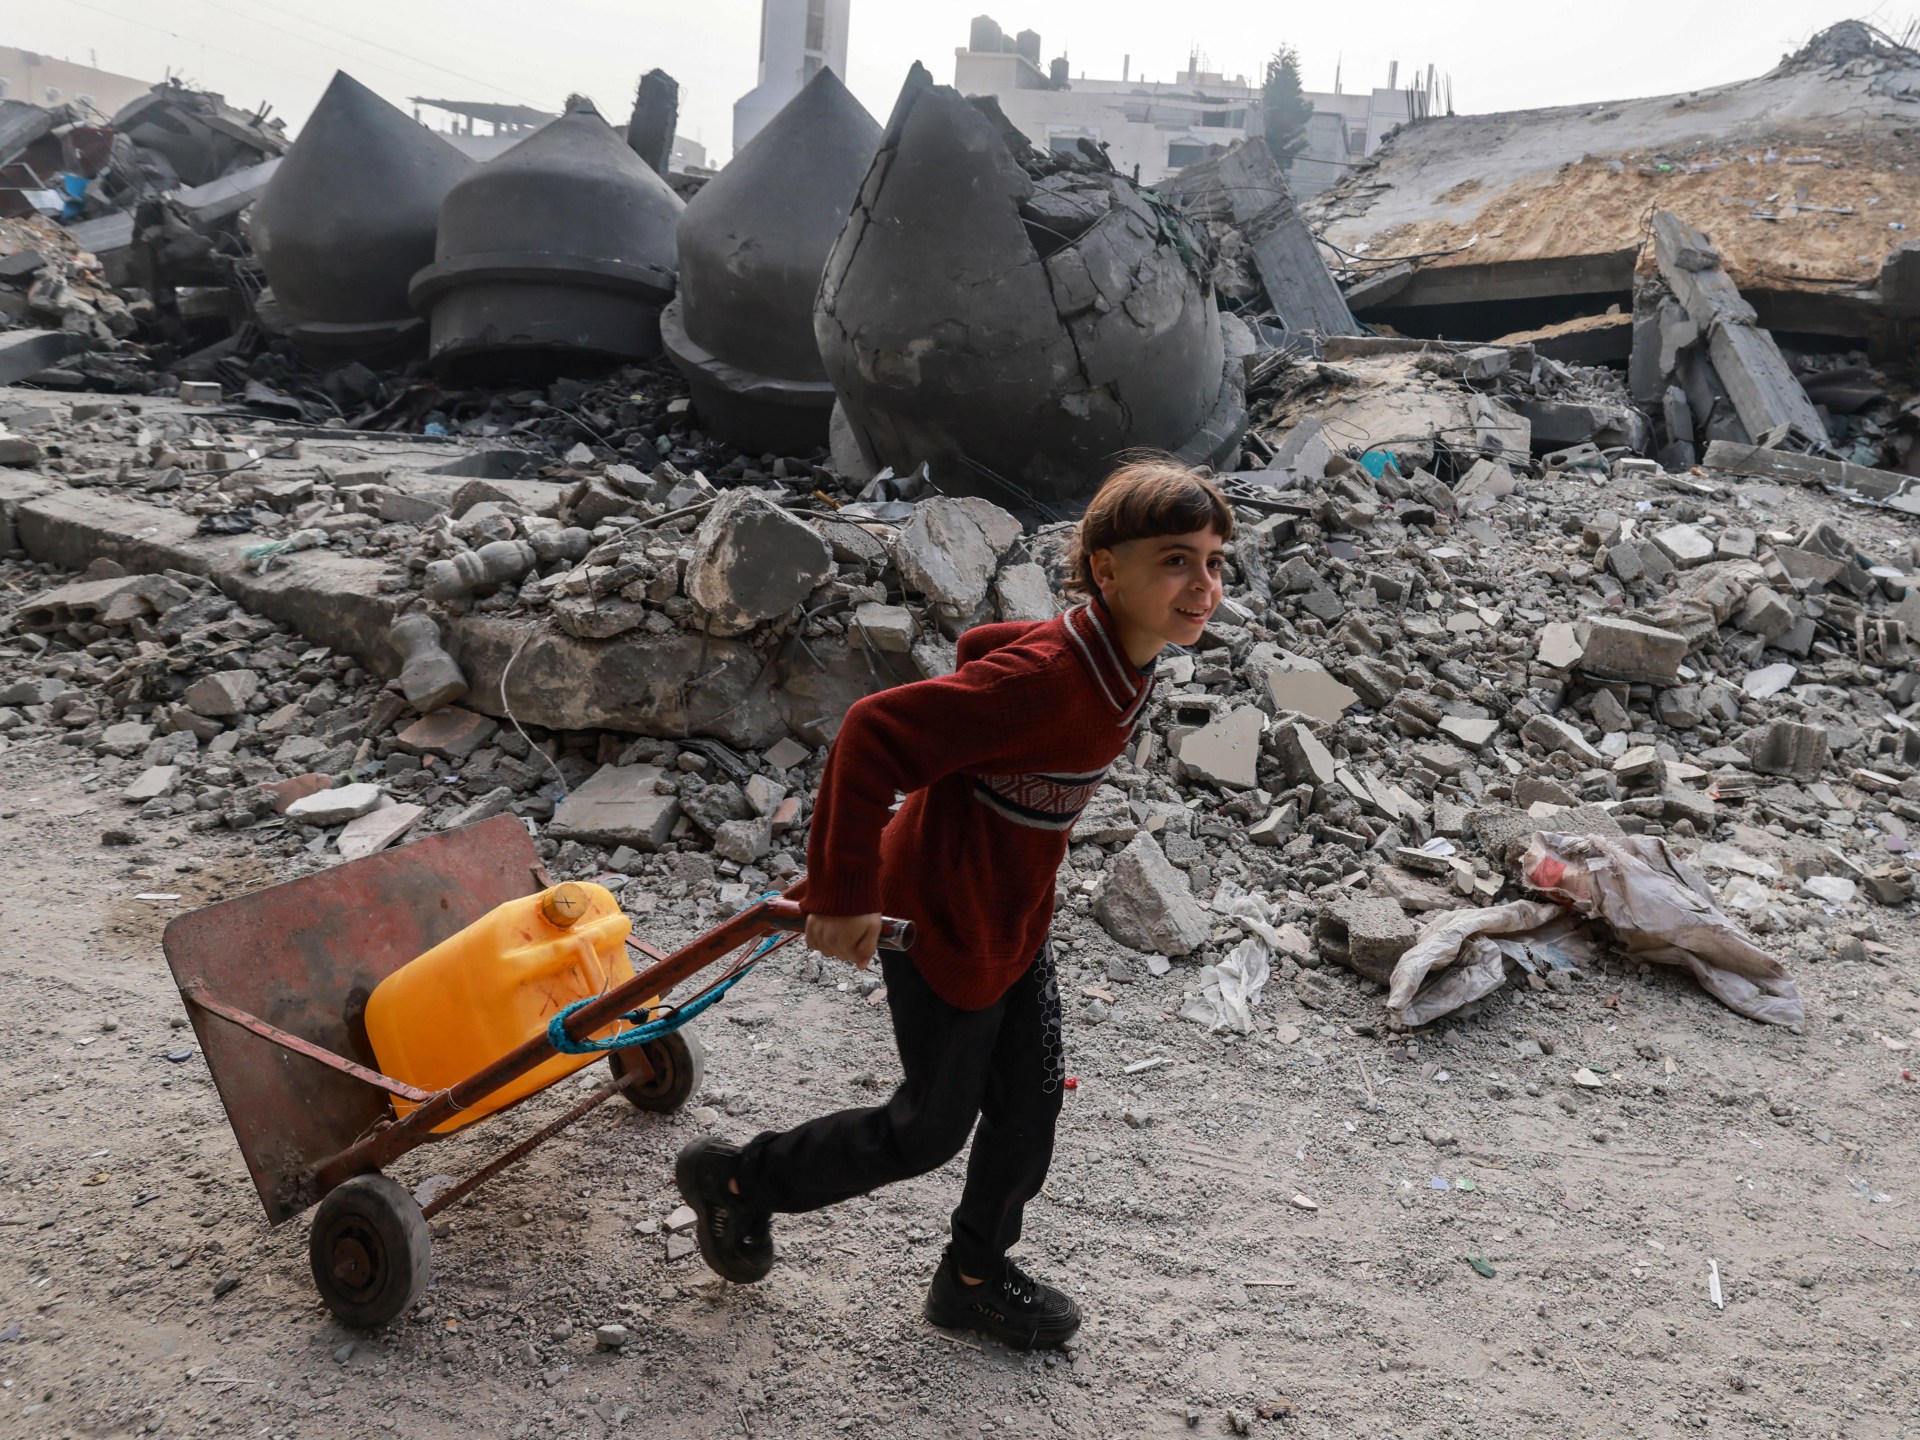 Le « désastre provoqué par l’homme » s’aggrave à Gaza alors qu’Israël continue de bloquer l’aide alimentaire